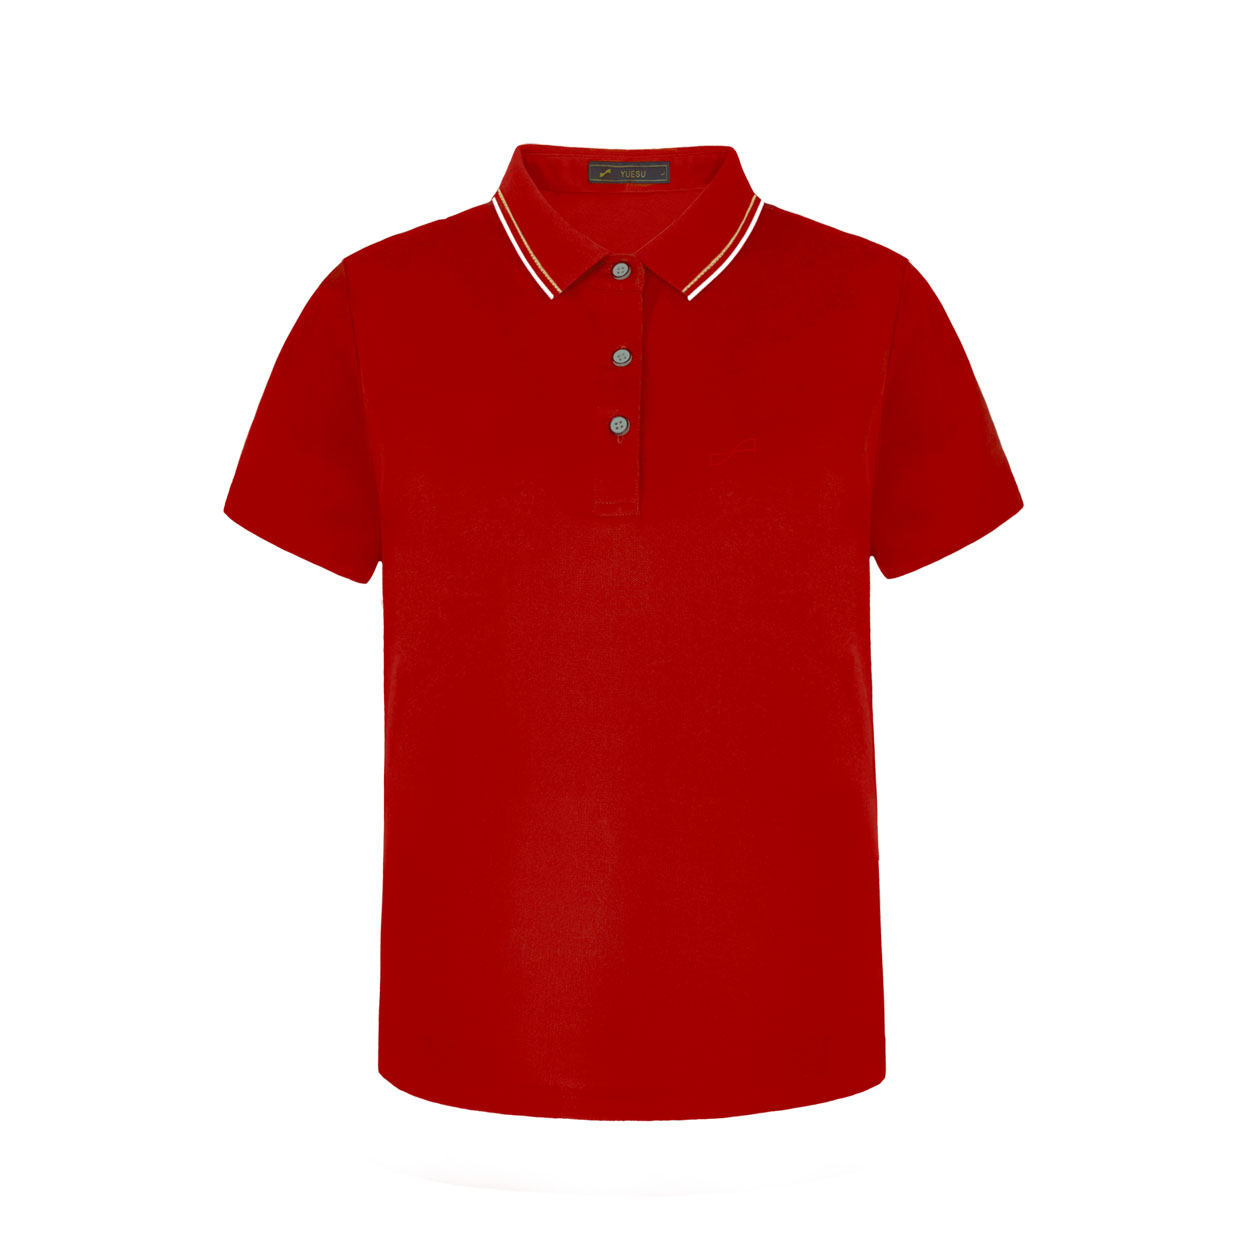 跃速夏季新款男子翻领短袖T恤 红色 款号：112320